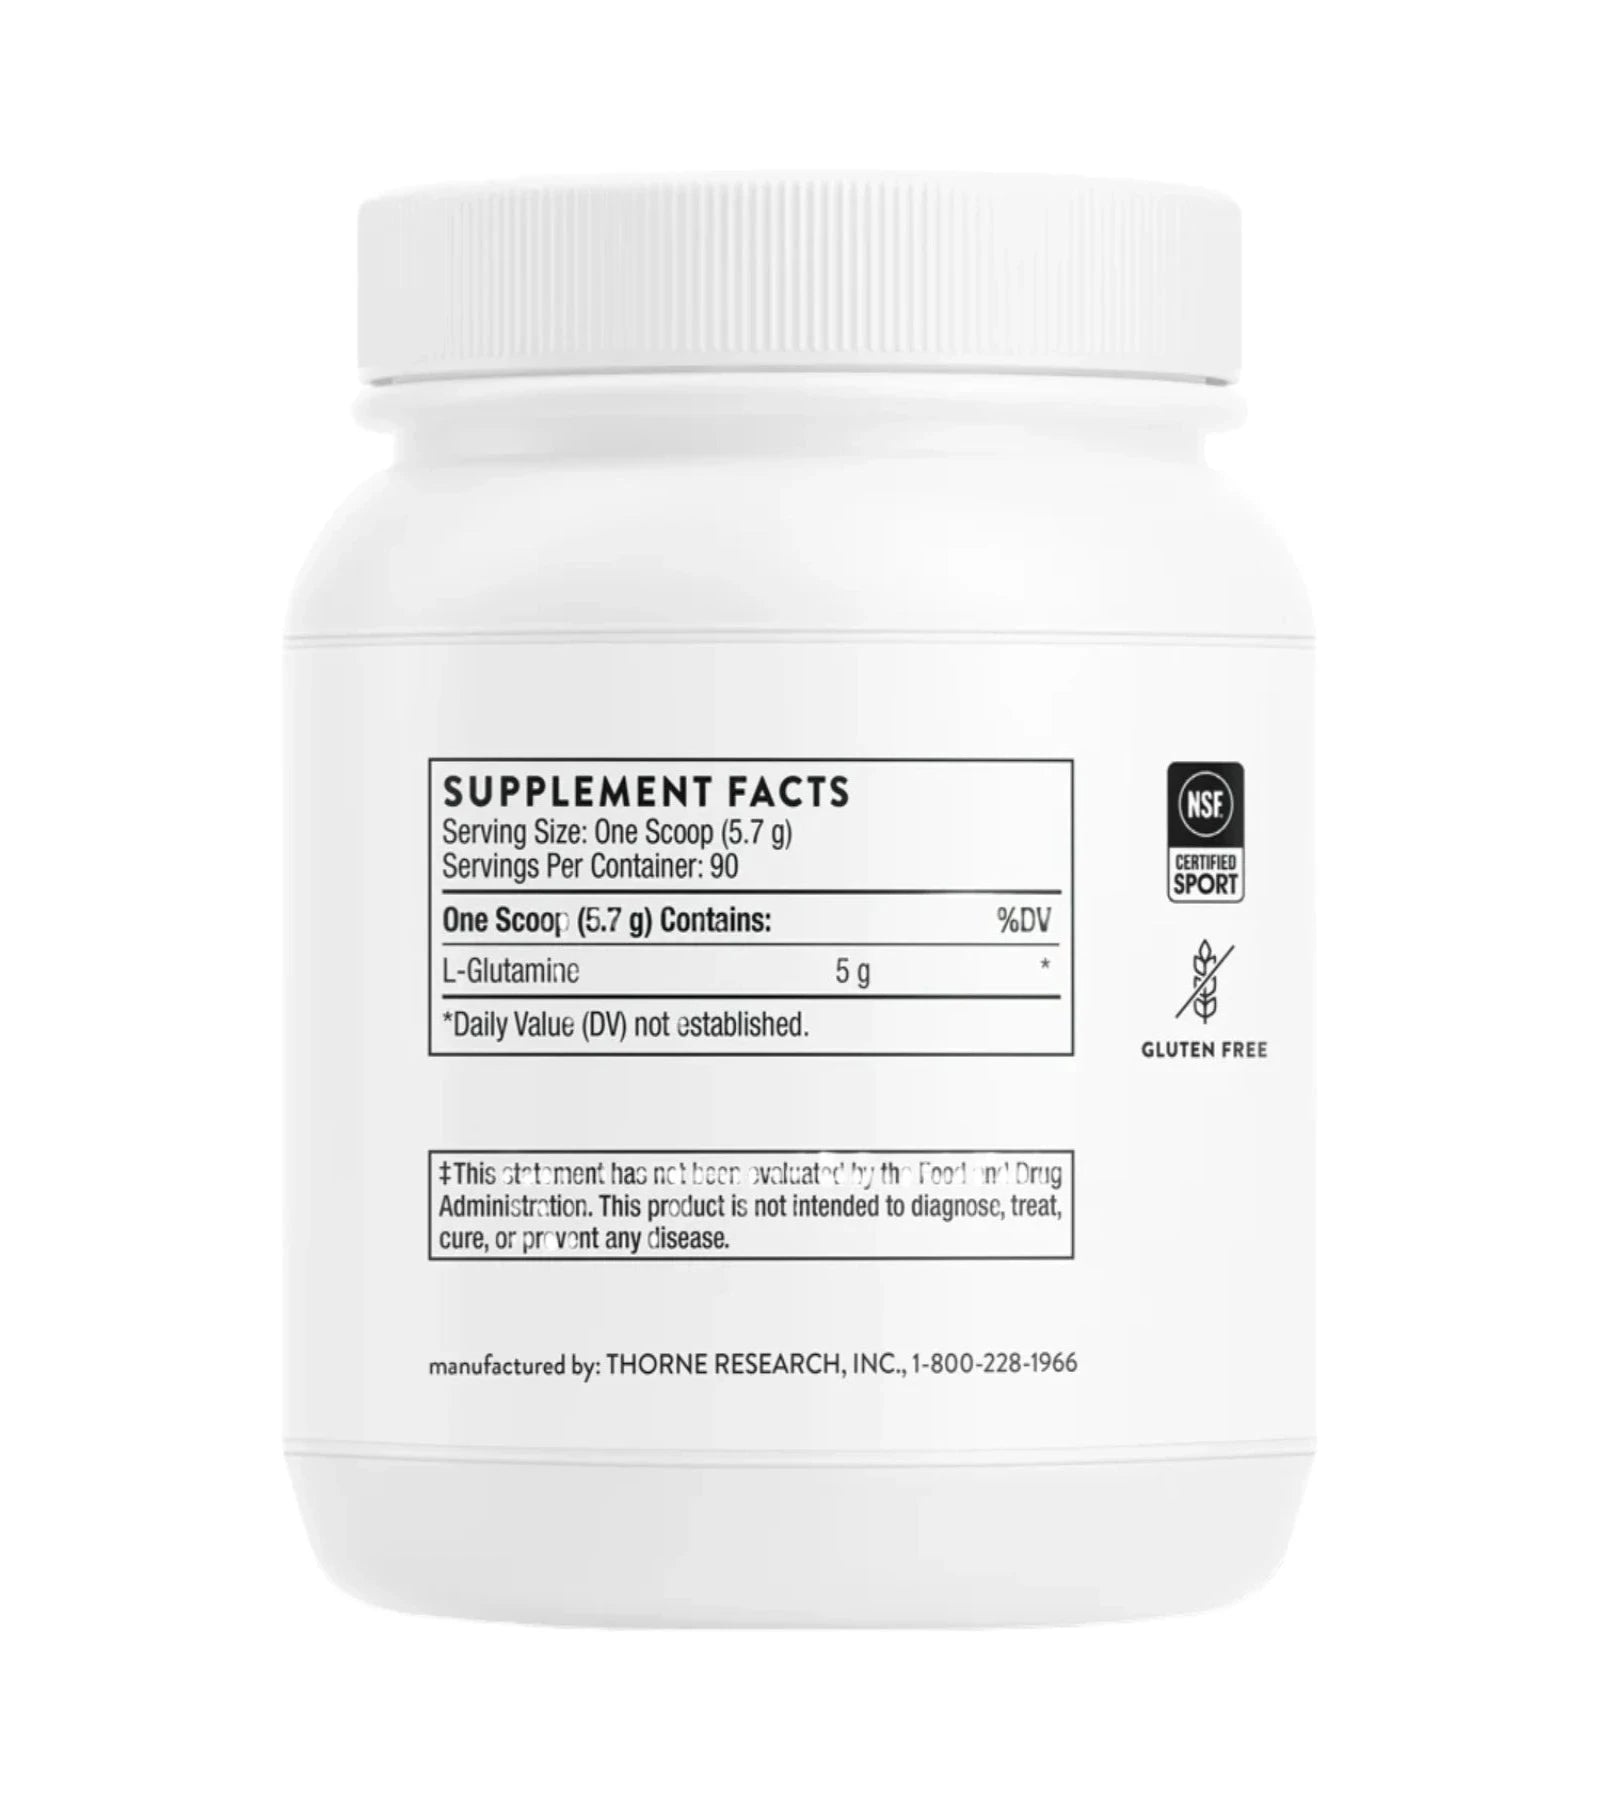 Thorne L-Glutamine Supplement Powder Facts